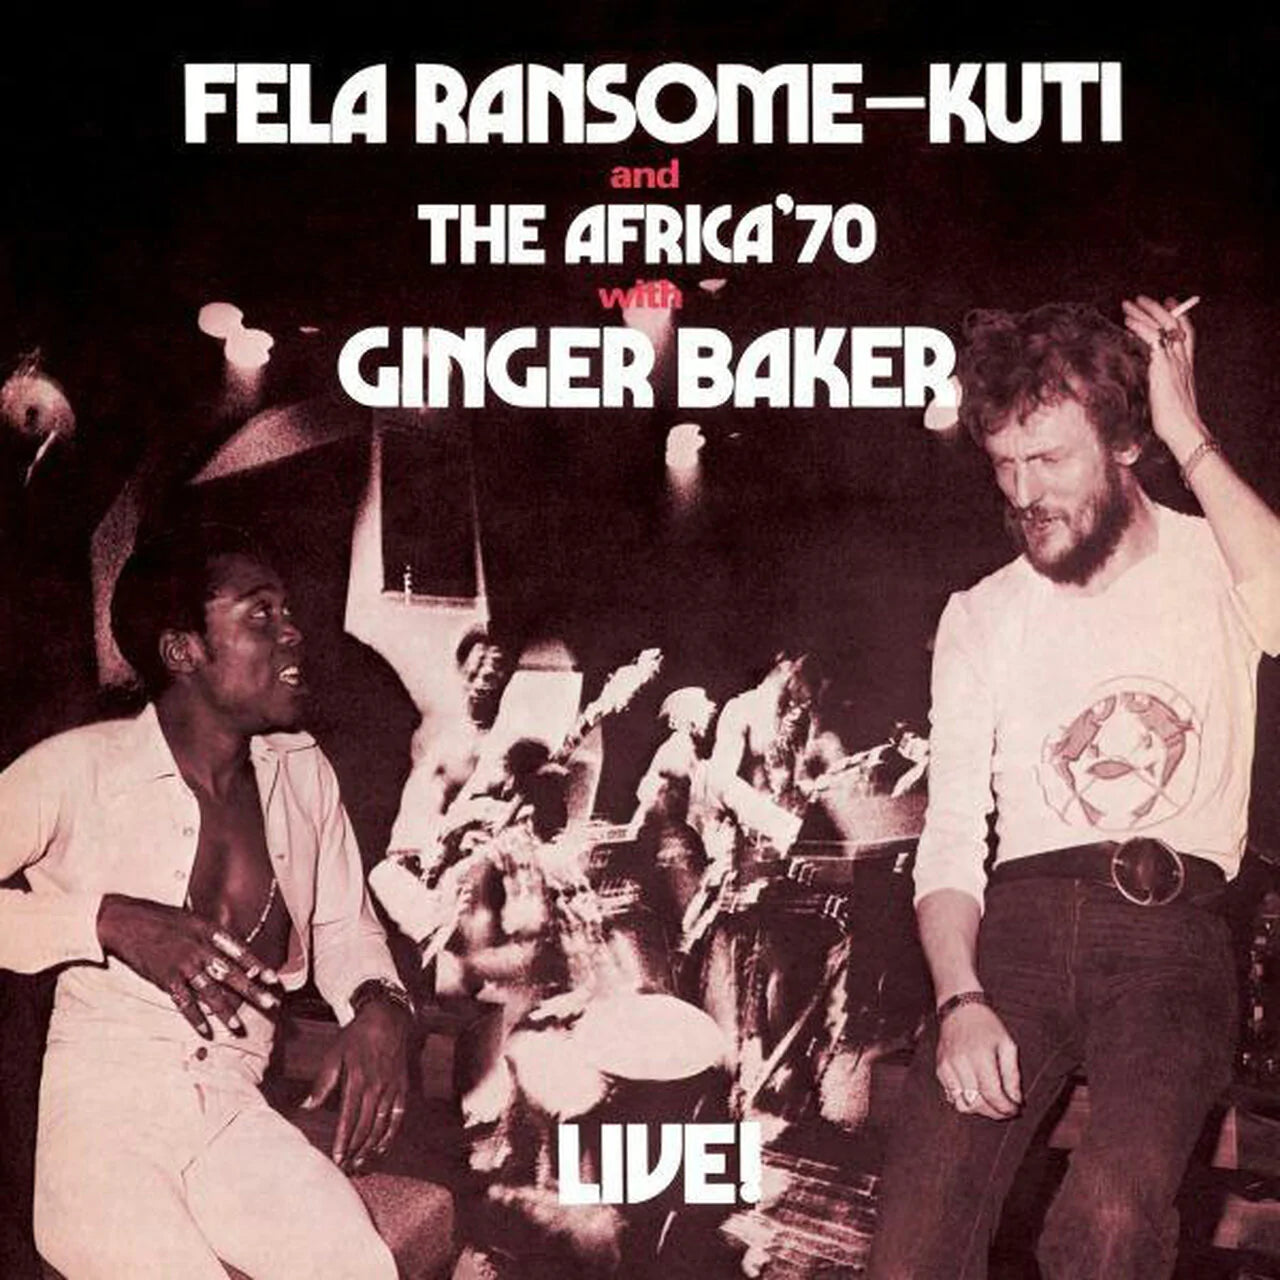 Fela Kuti - Live! With Ginger Baker & The Africa '70 | Buy on Vinyl LP